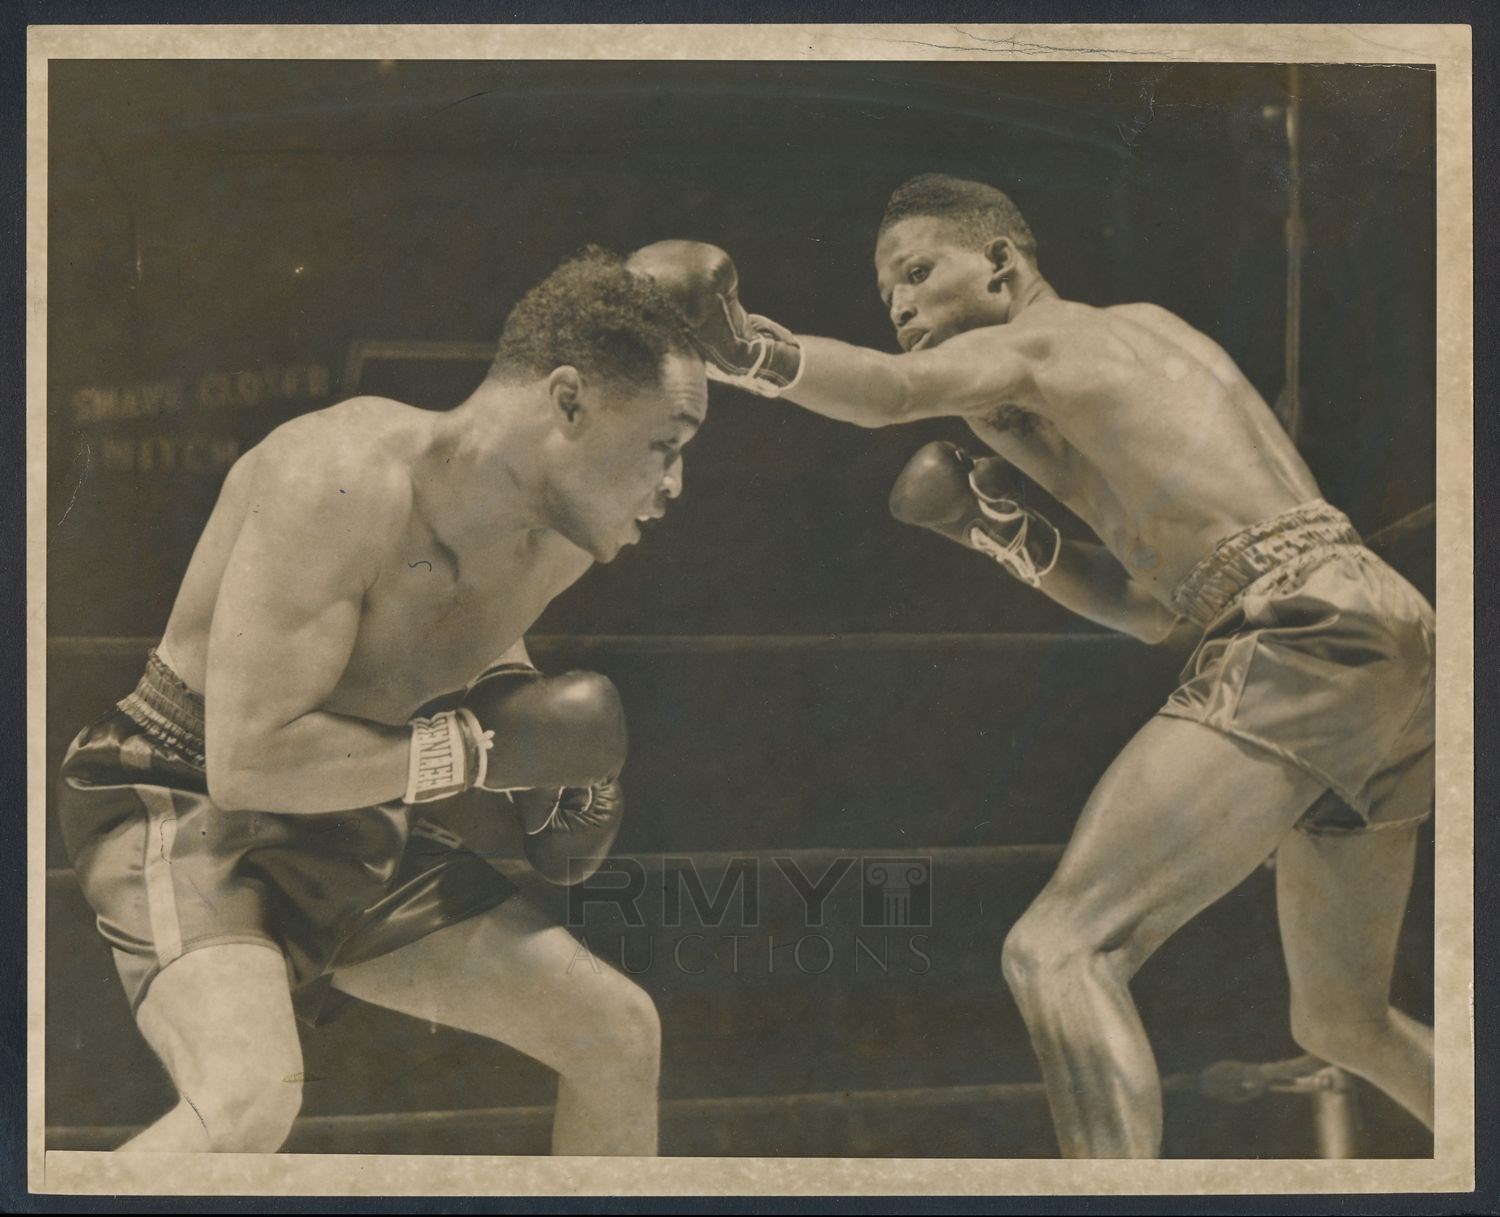 Hace 75 años: Los DOS mejores boxeadores libra por libra en la historia pelearon en Nueva York Item_30124_1